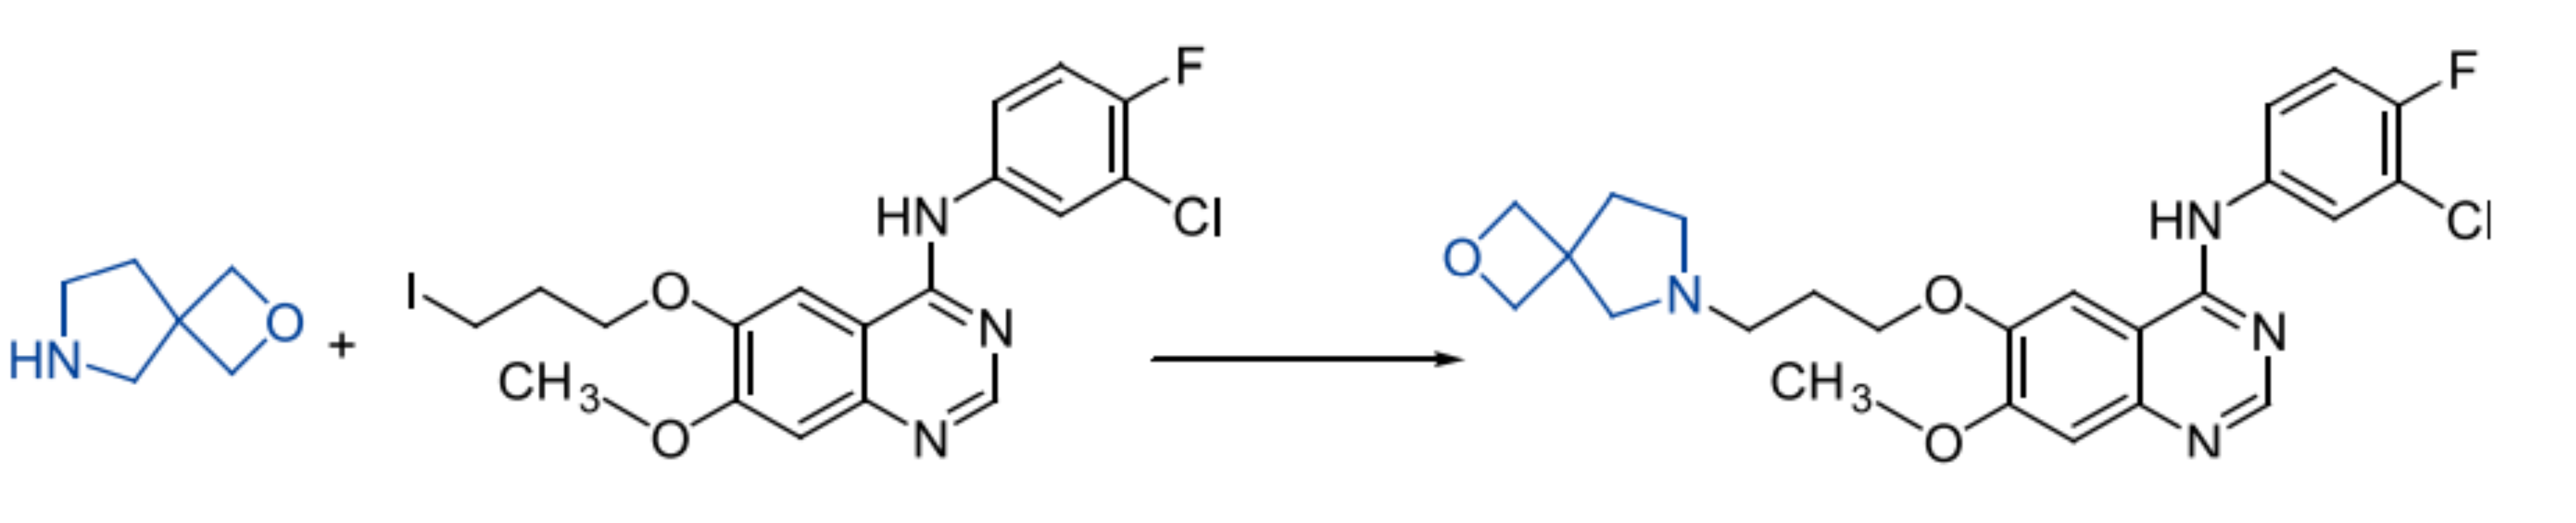 [5+4]螺环化合物修饰4-苯胺基喹唑啉衍生物